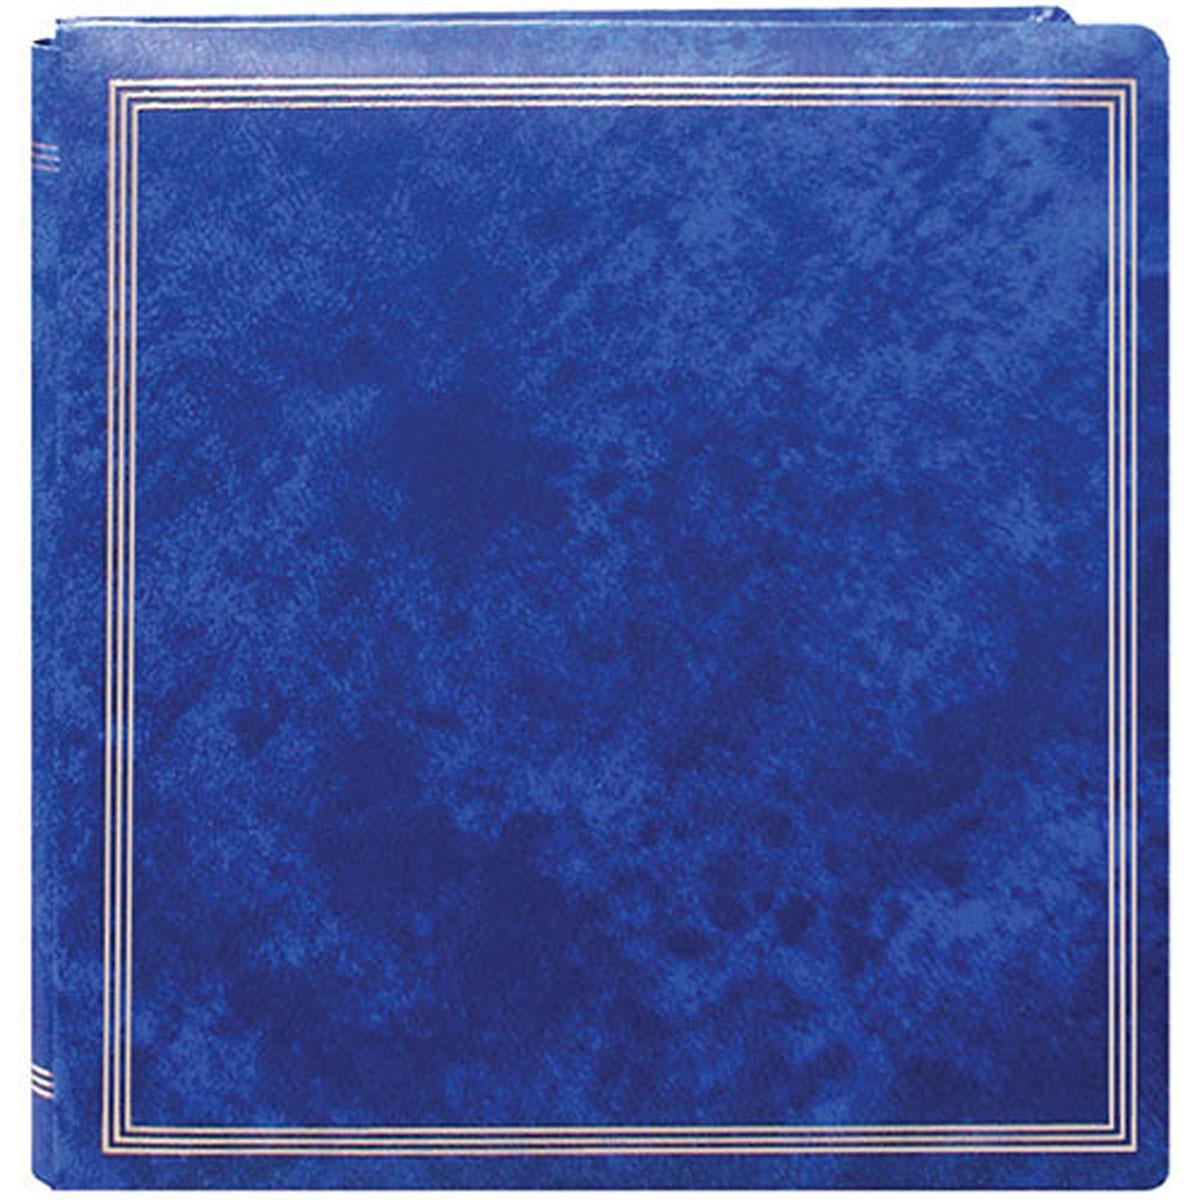 Pioneer X-Pando Post Bbound, фотоальбом на магнитной странице, вмещает 20 11x11 дюймов, ярко-синий